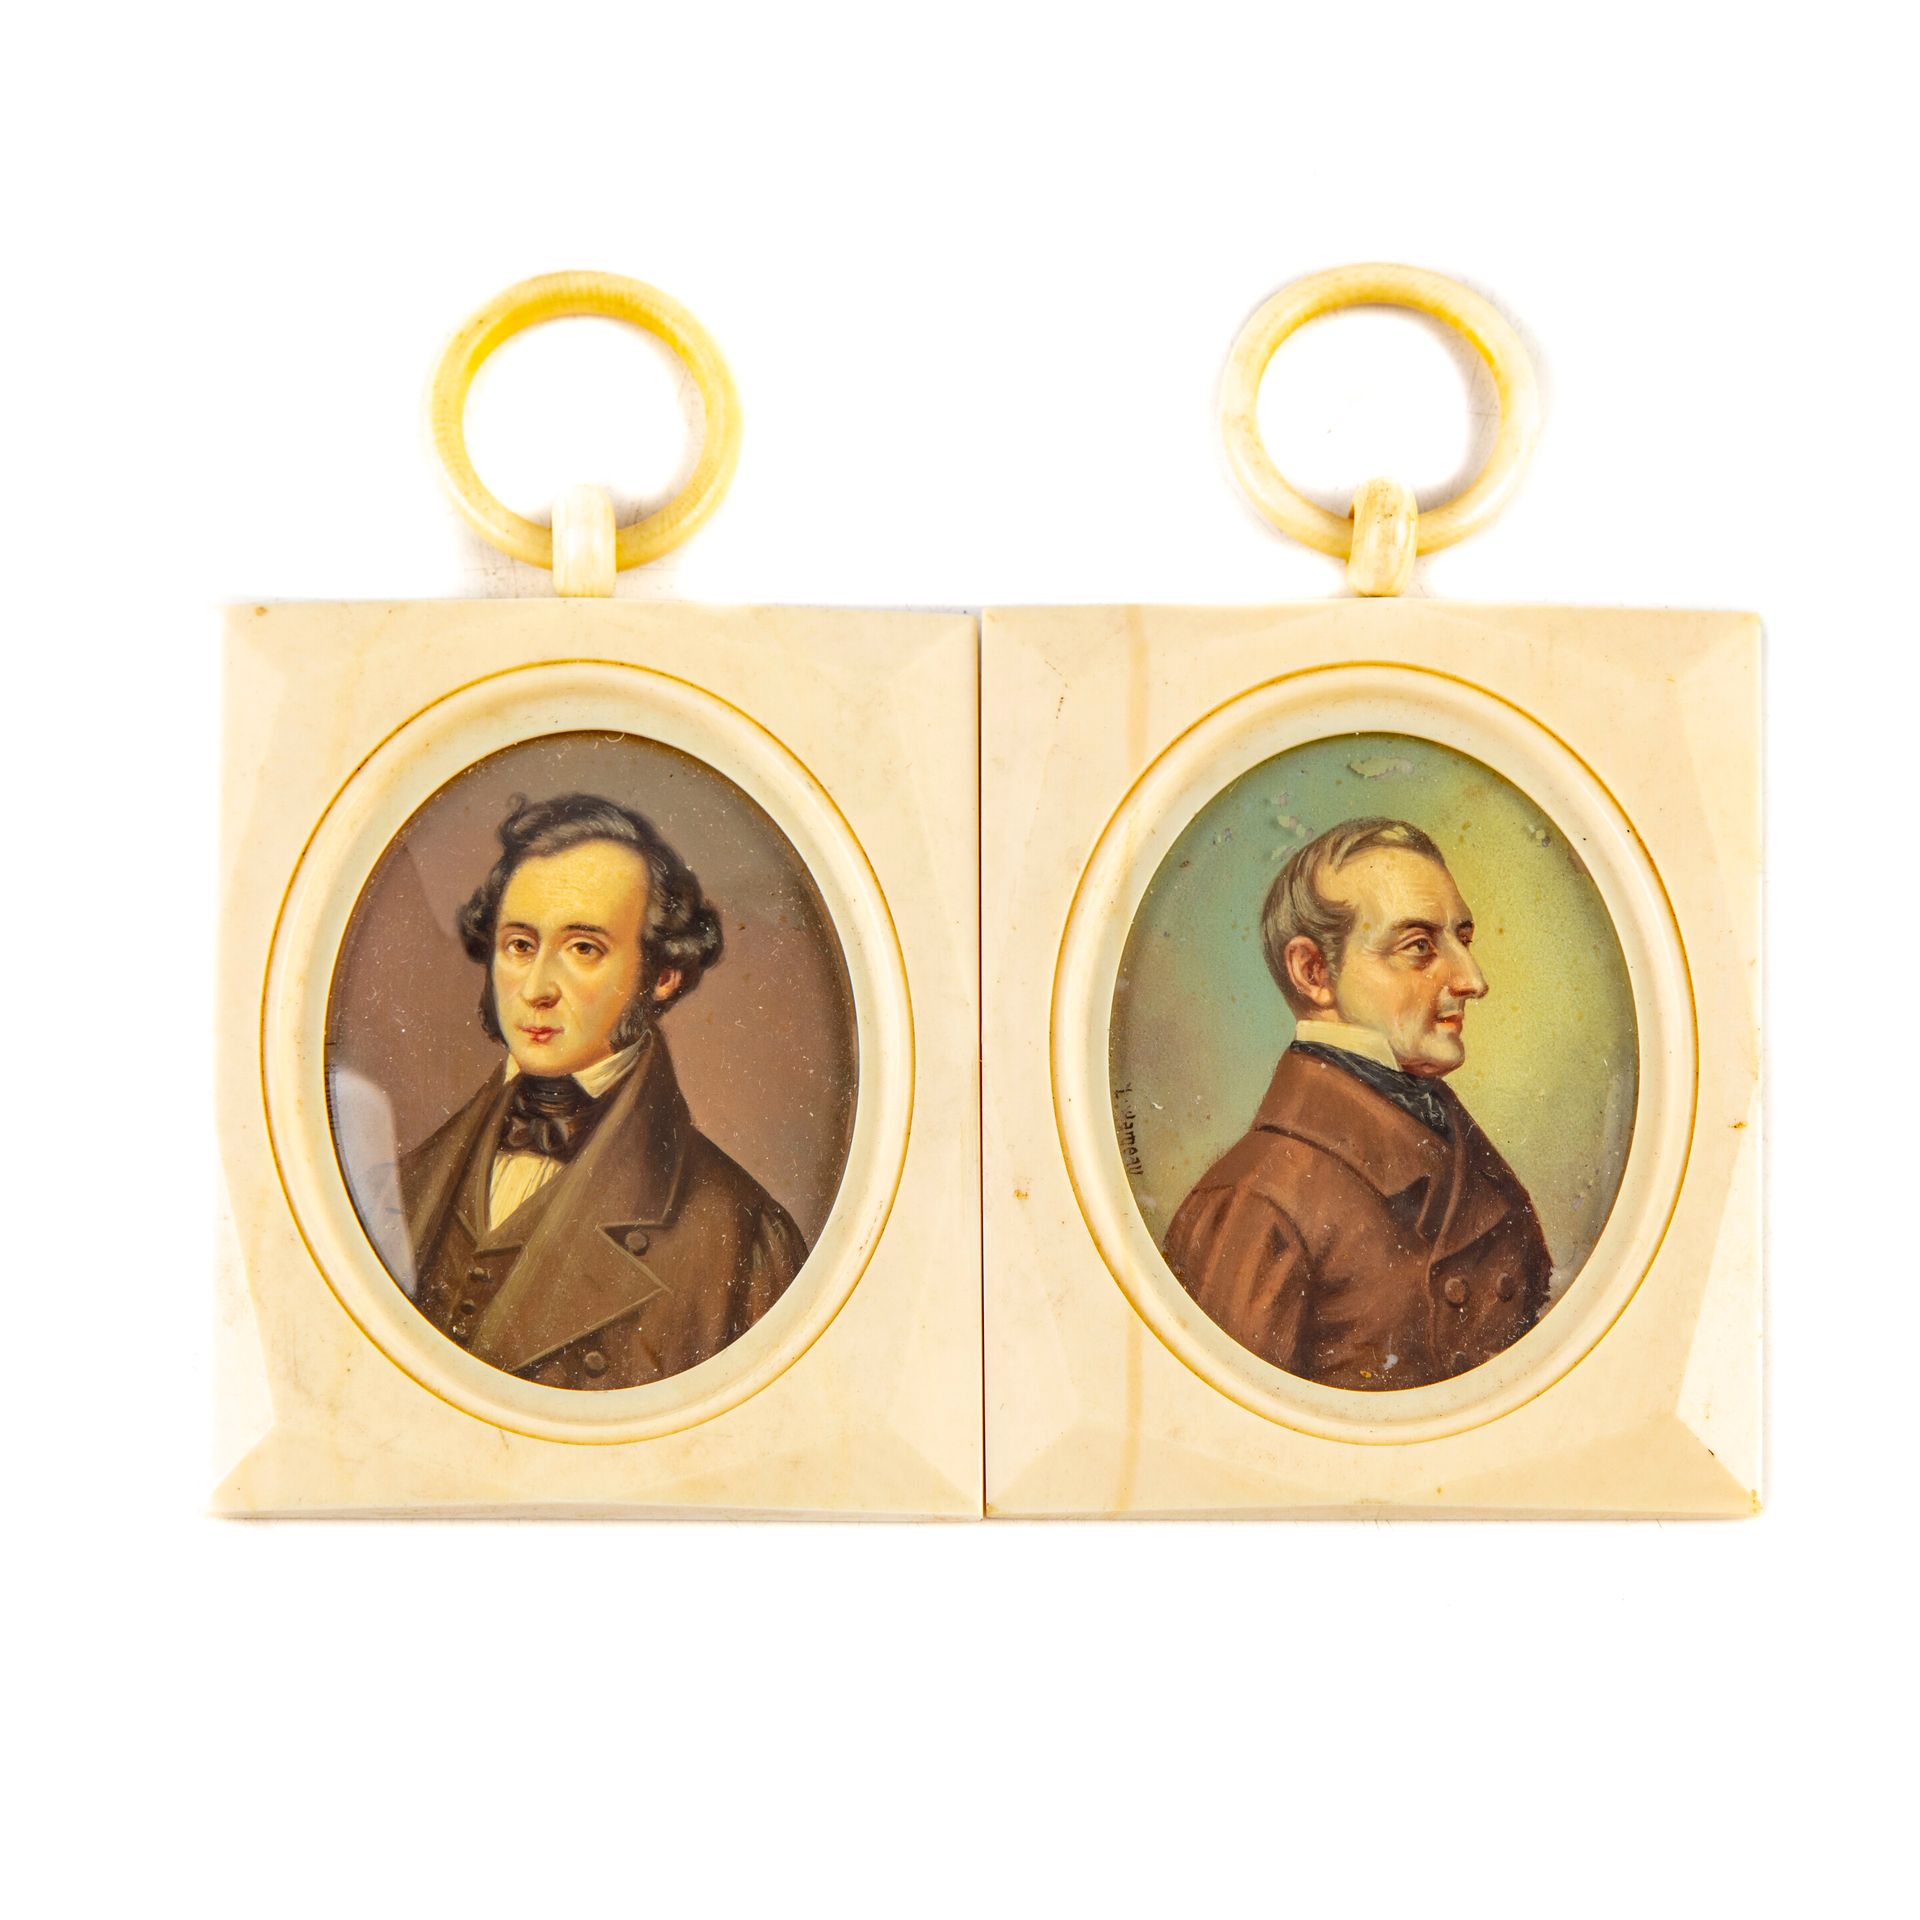 HAMEAU L. HAMEAU (um 1900)

Porträt eines Mannes 

Paar Miniaturen 

Rahmen in E&hellip;